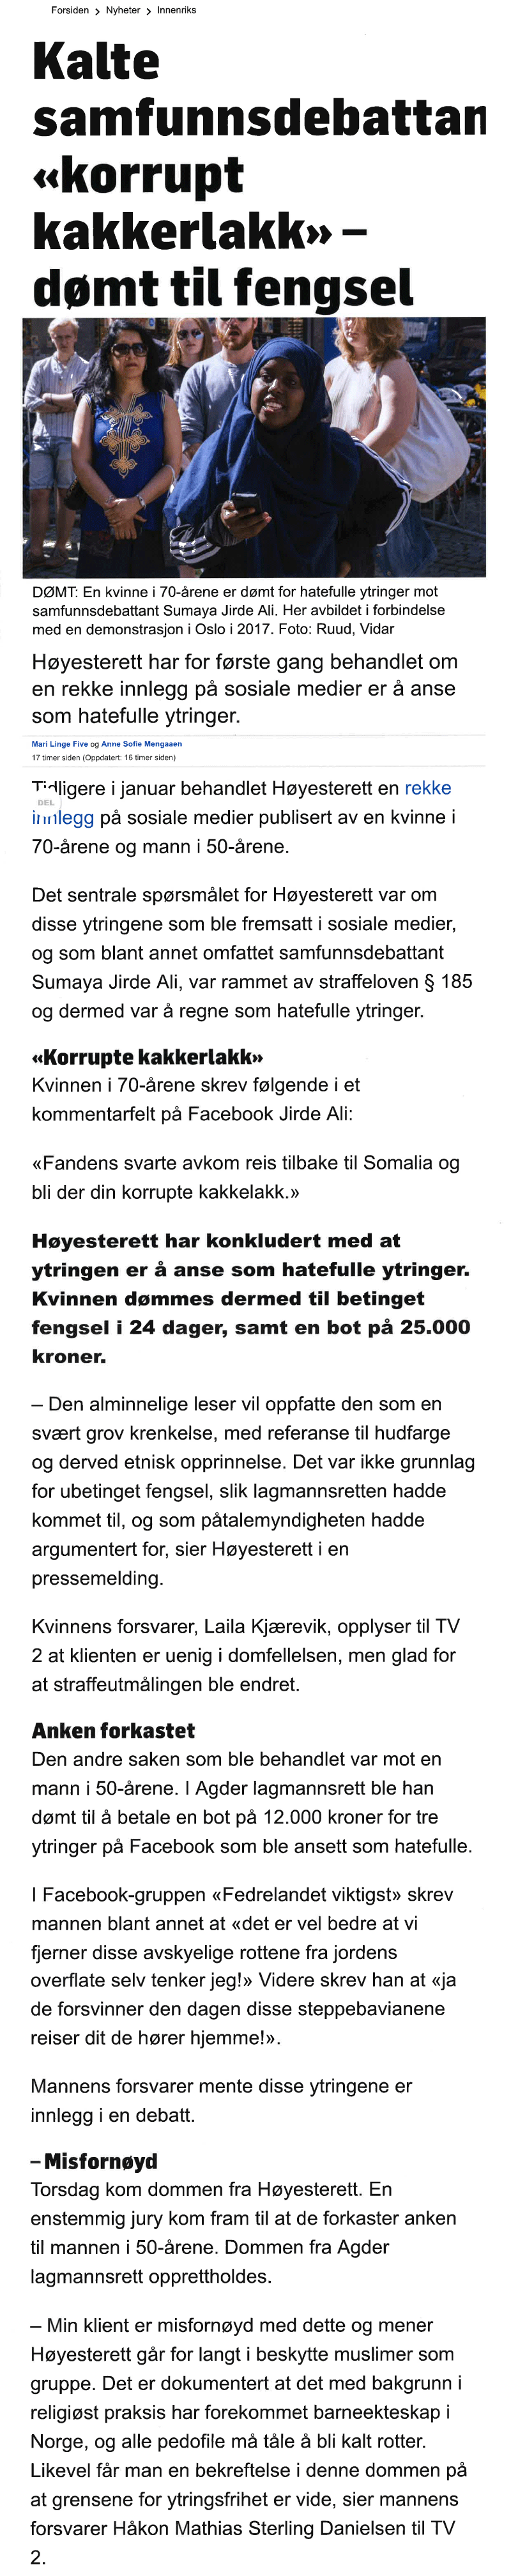 Menneskerettighetsadvokater. Hatefulle ytringer på Facebook (3). Advokat Danielsen & Co. Per Danielsen. Advokat i Oslo.